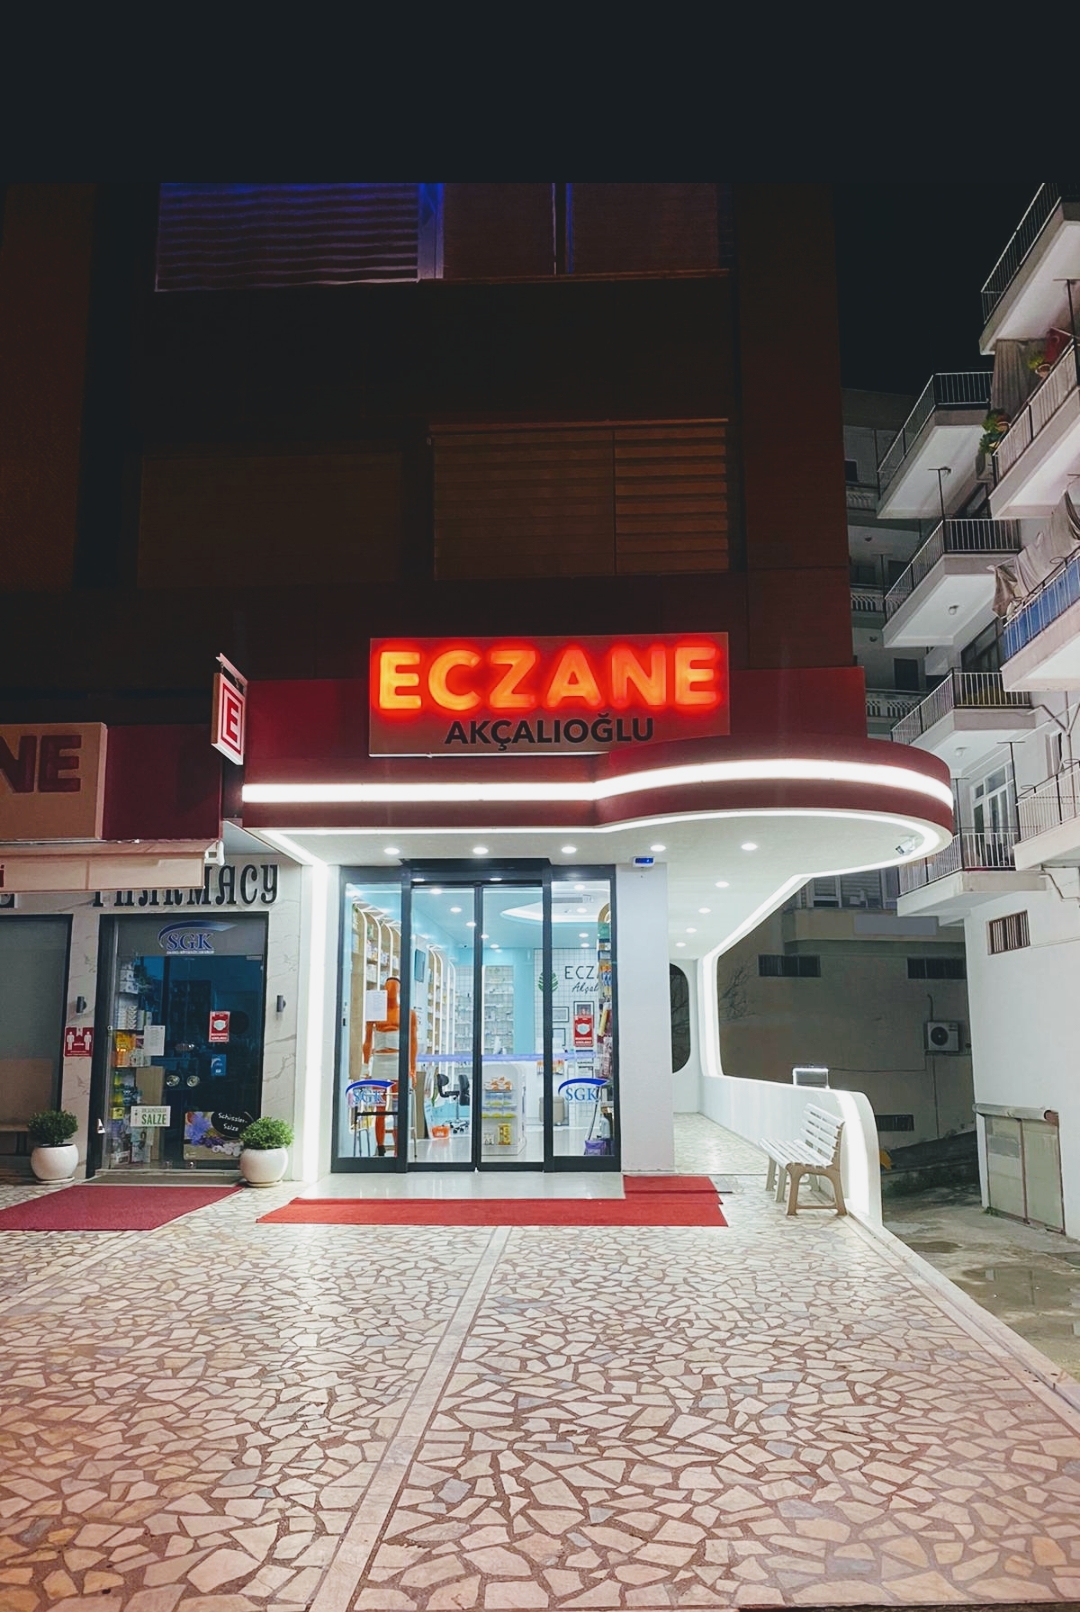 Akalolu Eczanesi (Apotheke-Pharmacy)